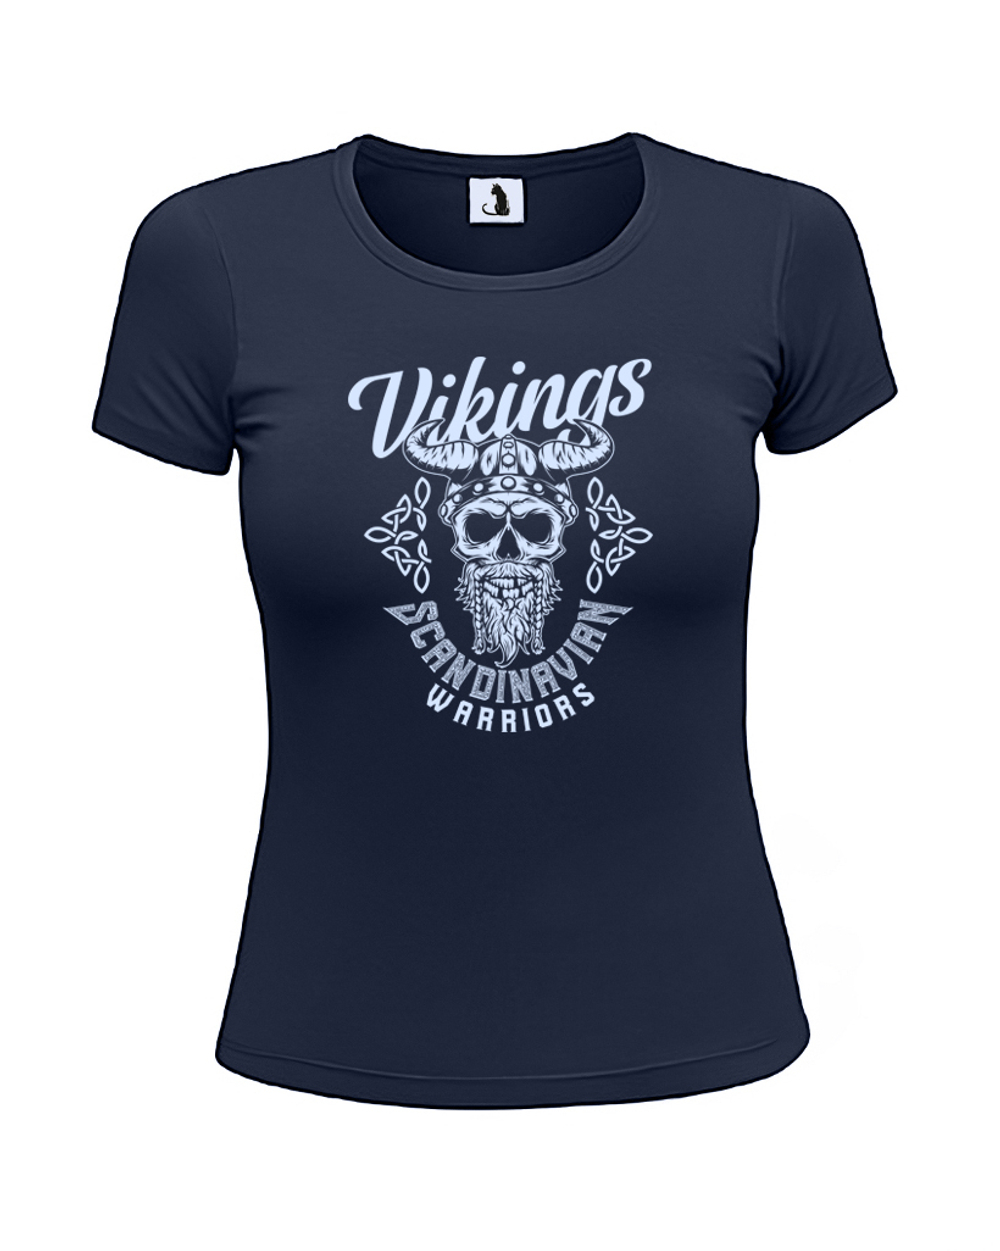 Футболка Vikings Scandinavian Warriors женская приталенная темно-синяя с голубым рисунком